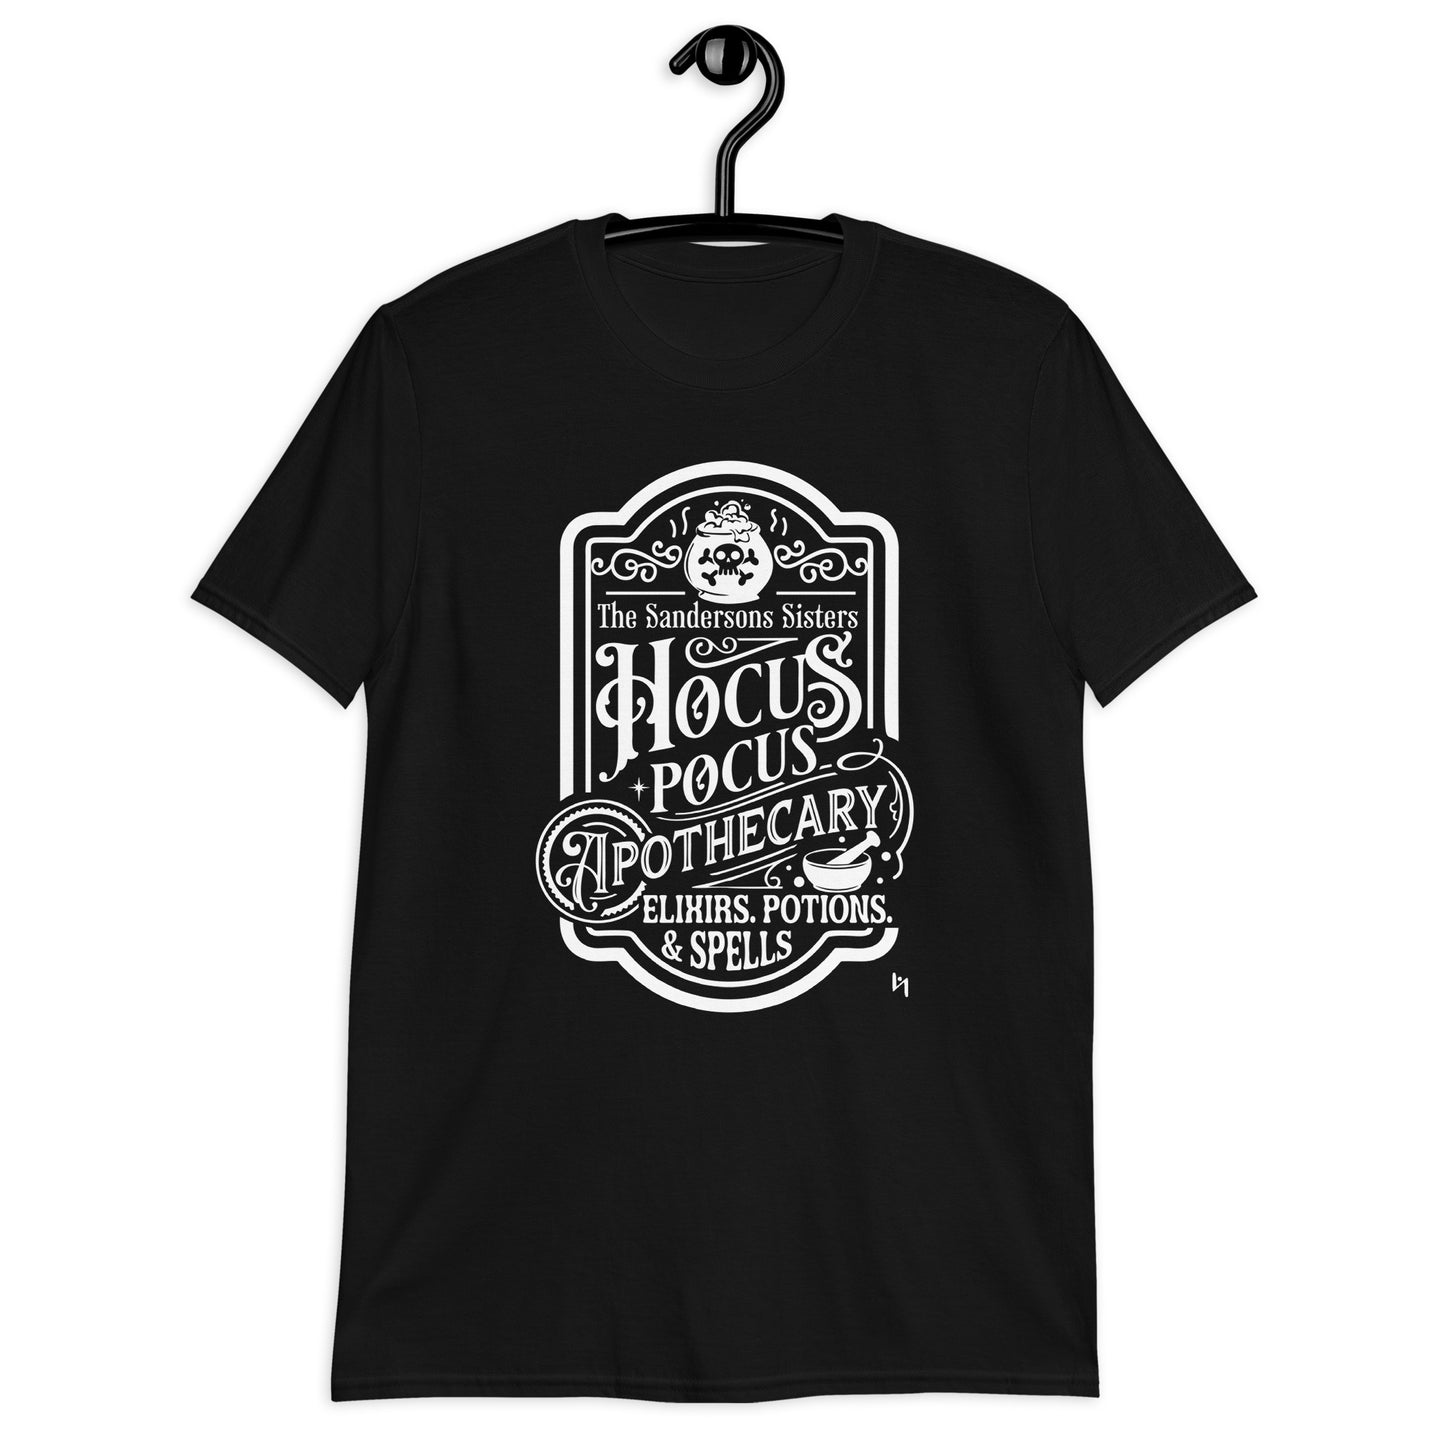 Hocus Pocus Unisex T-Shirt